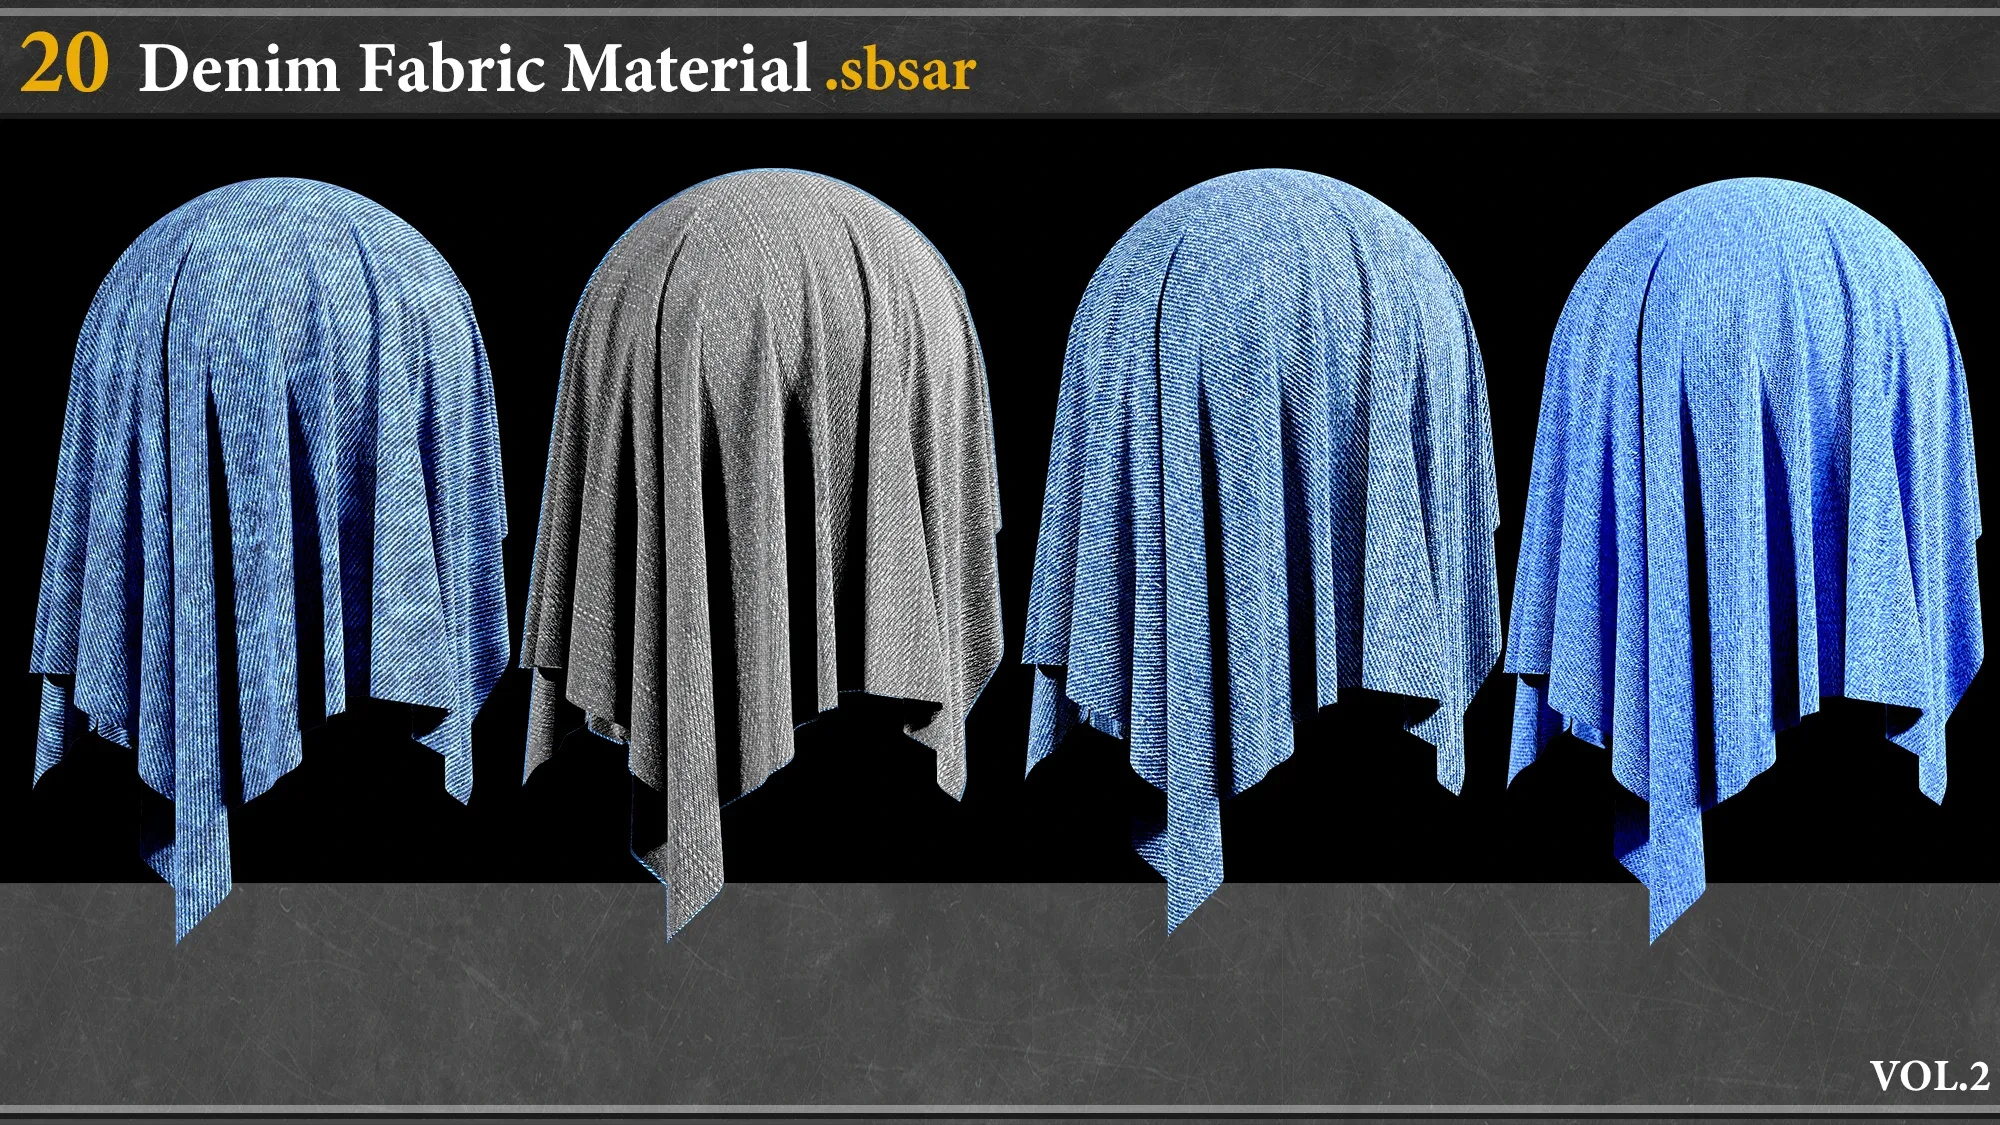 20 Denim Fabric Material _VOL.2